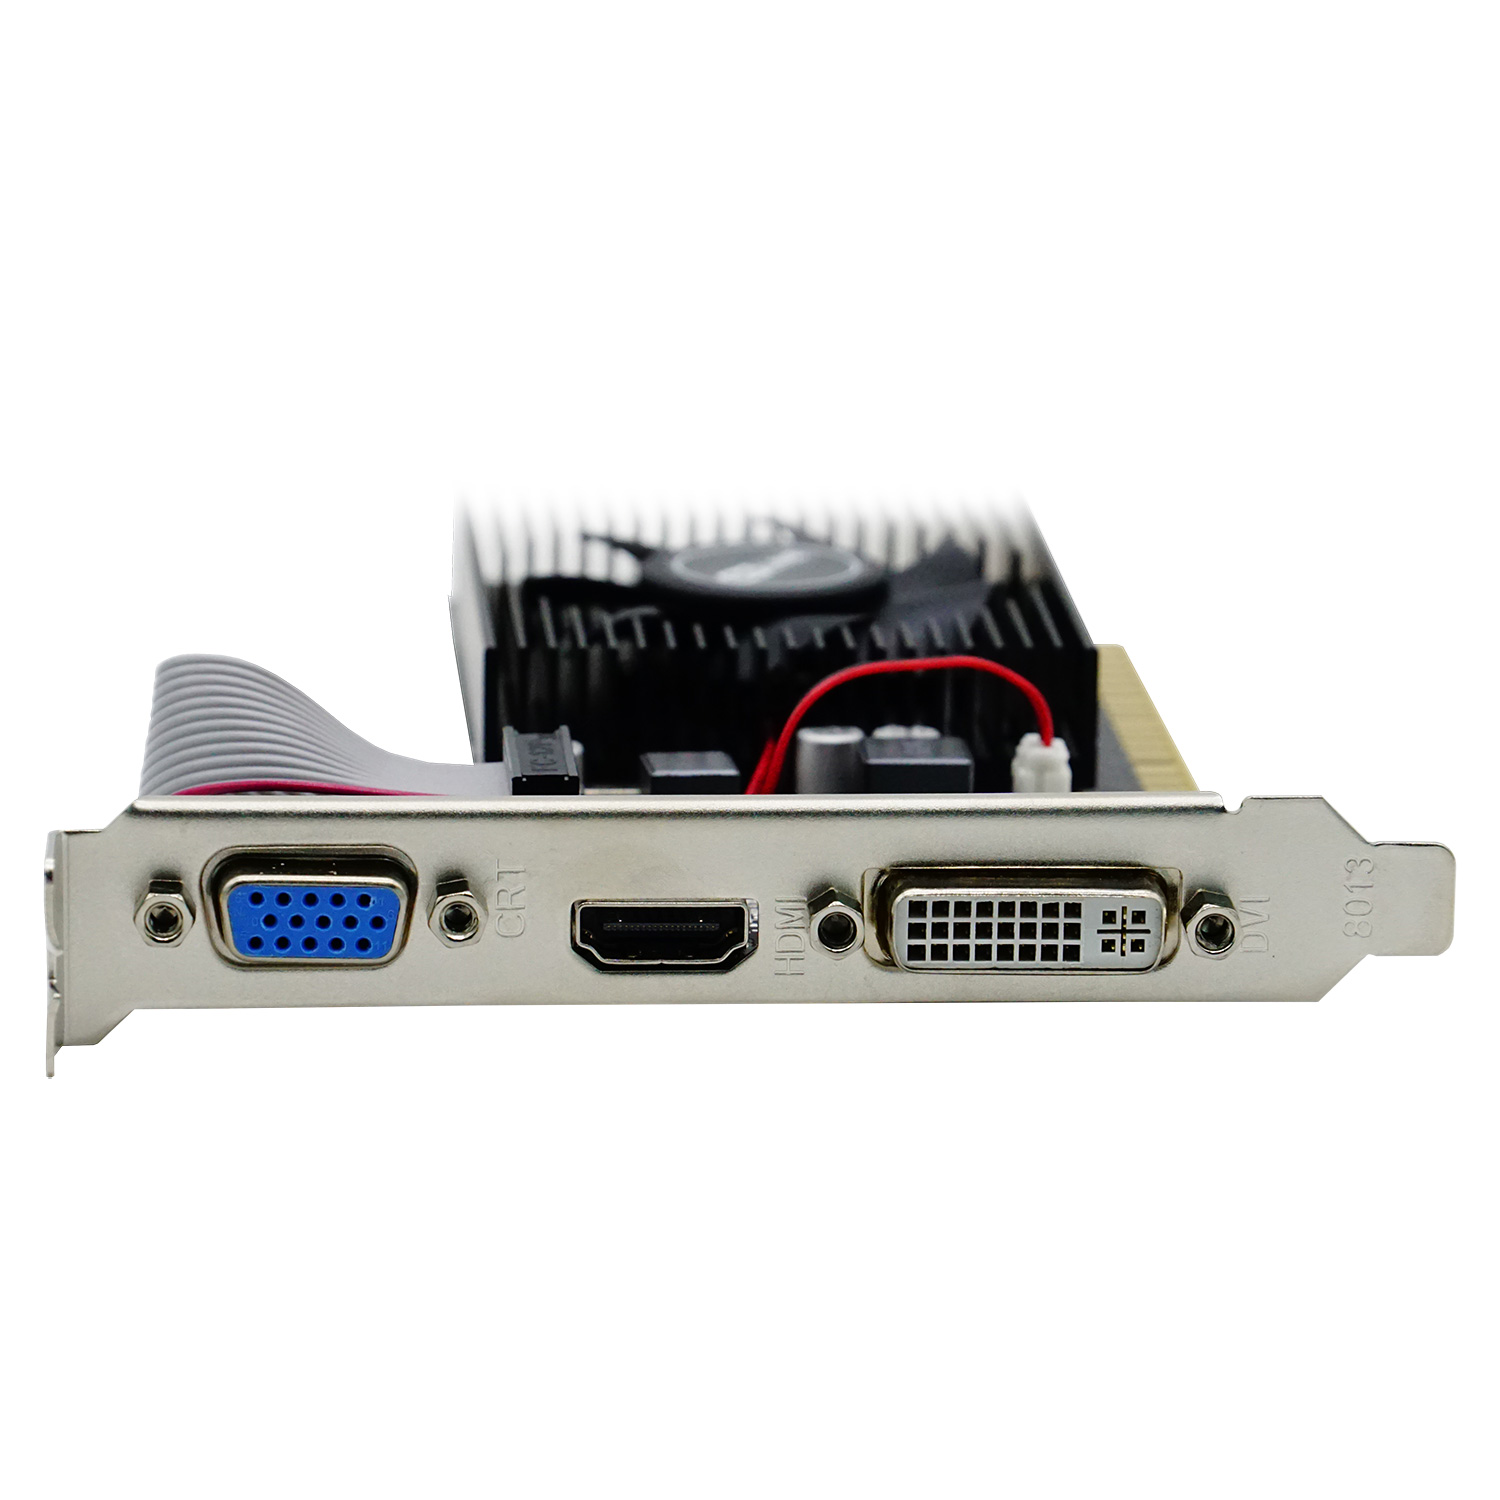 Placa de Vídeo Goline NVIDIA GeForce GT-610 2GB DDR3 - GL-GT610-2GB-D3-V1 (1 Ano de Garantia)